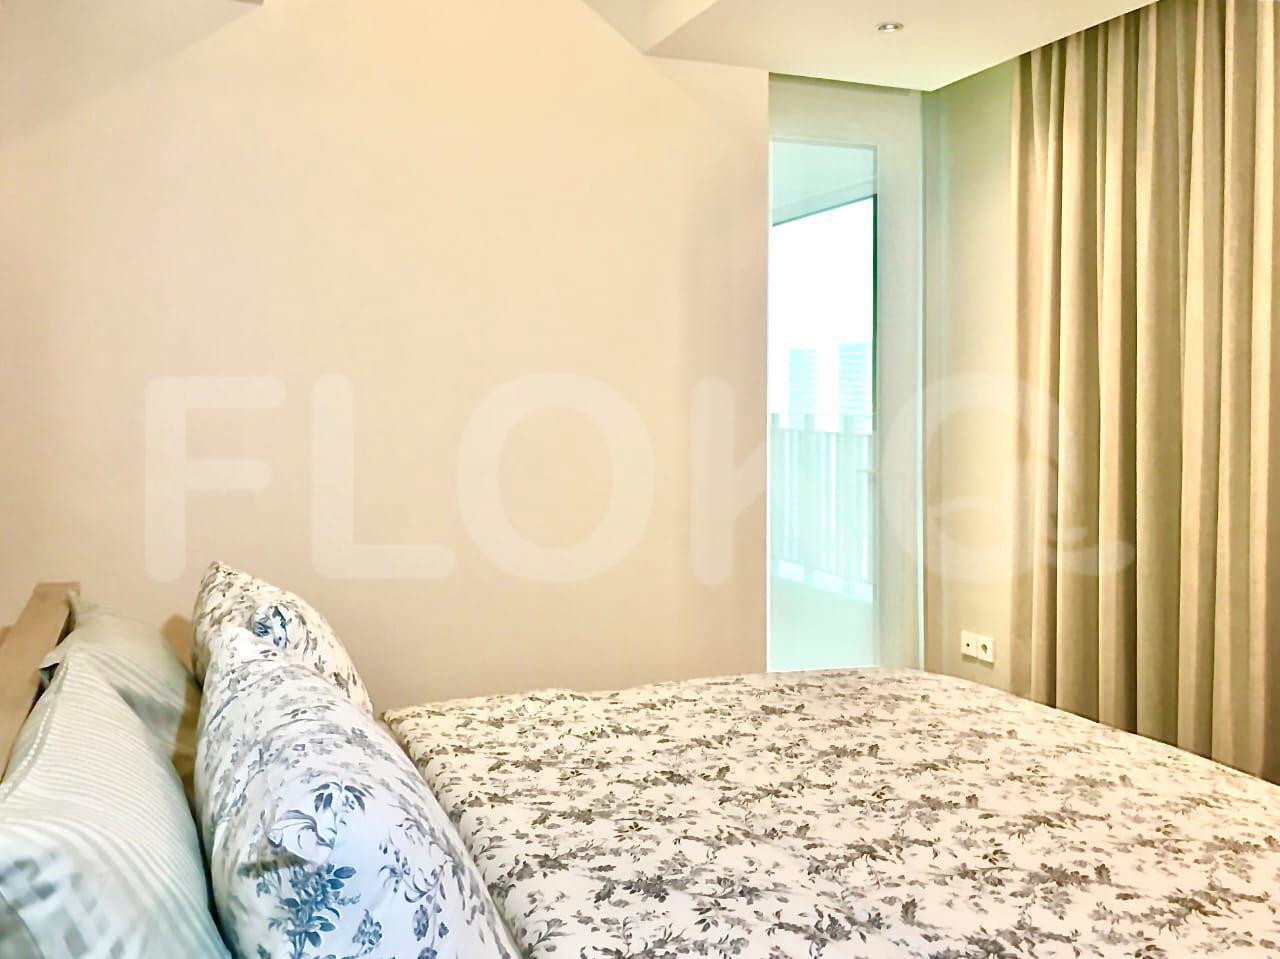 Sewa Apartemen Kemang Village Residence Tipe 3 Kamar Tidur di Lantai 20 fkea06